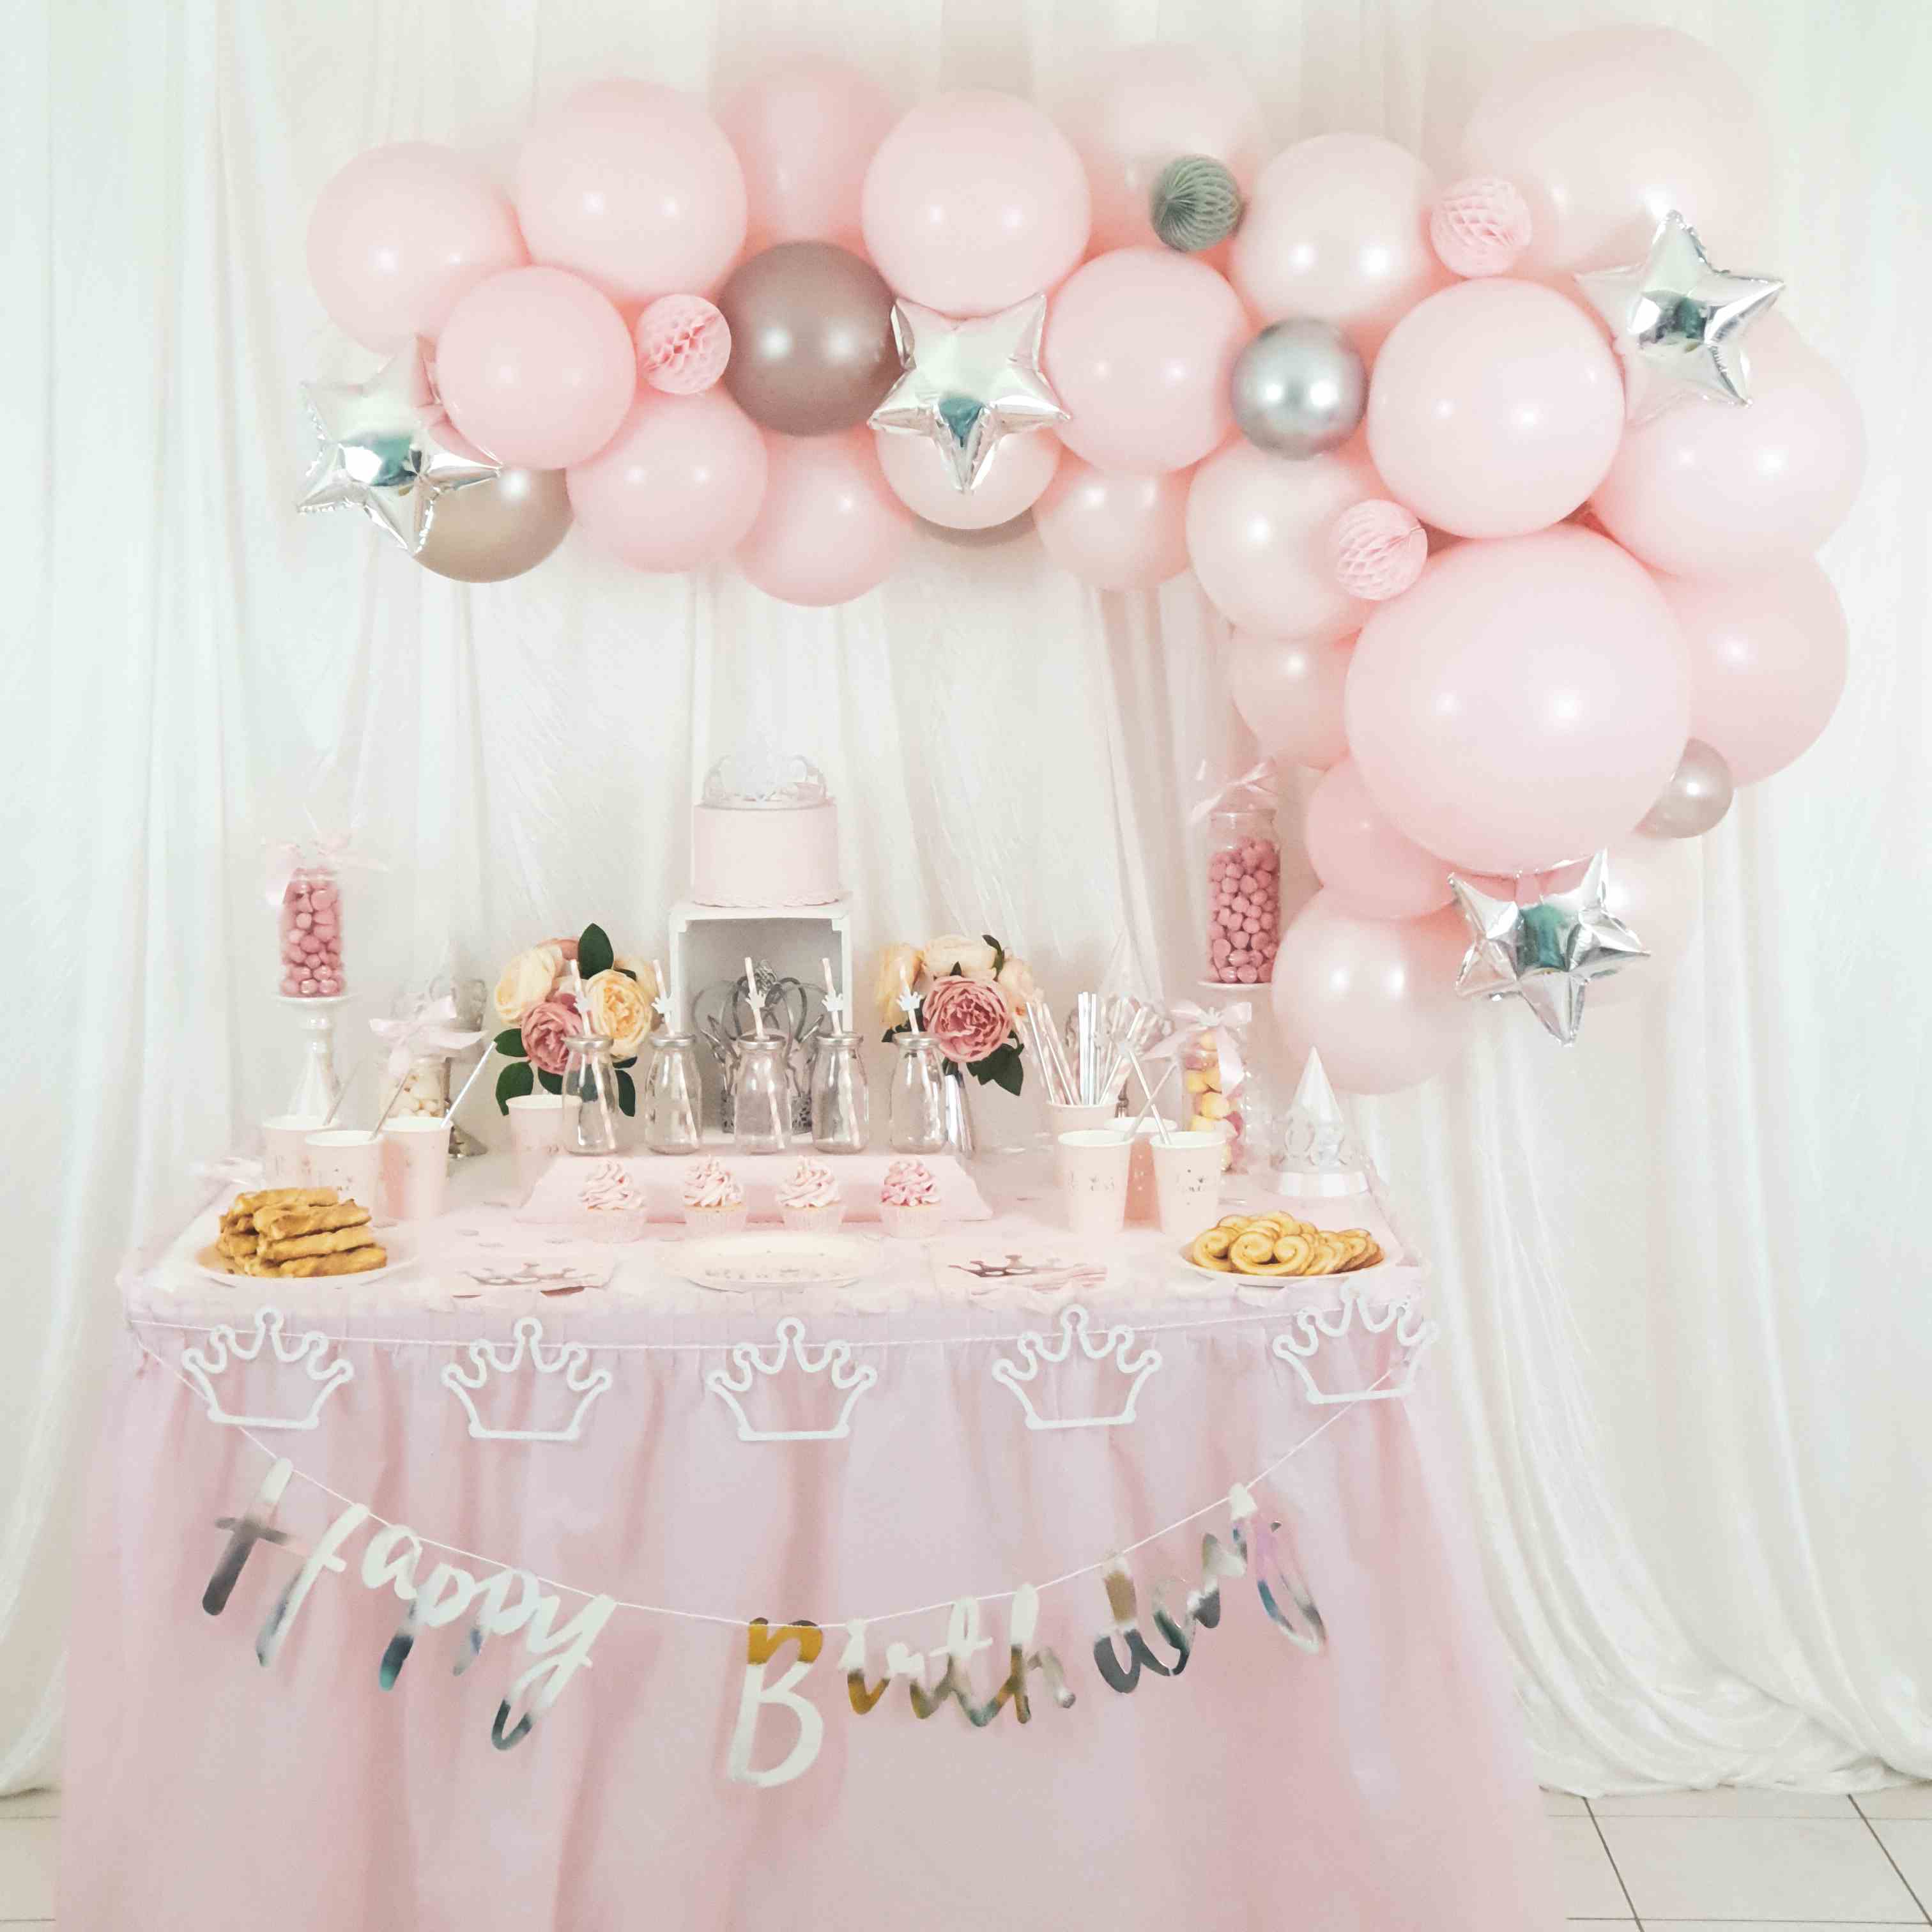 La décoration princesse pour un anniversaire - Blog Tendance